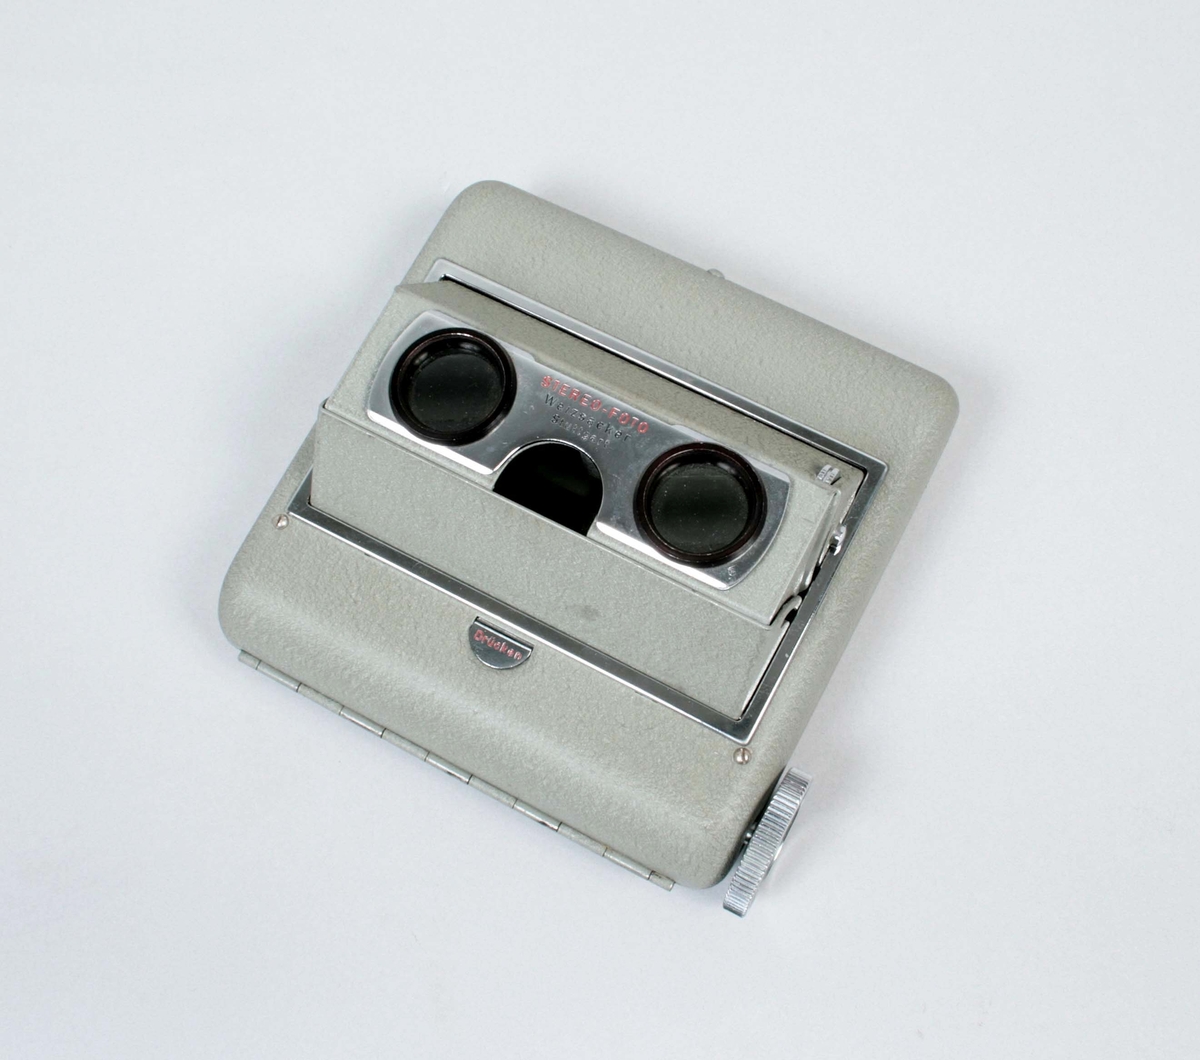 Stereokamera. Filmer kan visas i 3D (rumsperspektiv där längd, bredd och djup uppfattas). Skåpet är lackerat i grögrön plåt, med två tiitthål och  
på motsatta sidan, en skärm av plast. Inne i lådan, roterar en film som exponeras mot titthålen. Titthålen justeras, så att den tredimensionella bilden uppstår. För 120 mm:s diarulle (50 x 80 mm). Förvaras i svart plastfodral med dragkedja. Märkt: Stereo-foto Weizsäcker Stuttgart

Funktion: Att titta på stereoskopiska bilder eller 3D-bilder. Även film kan betraktas i stereokameror